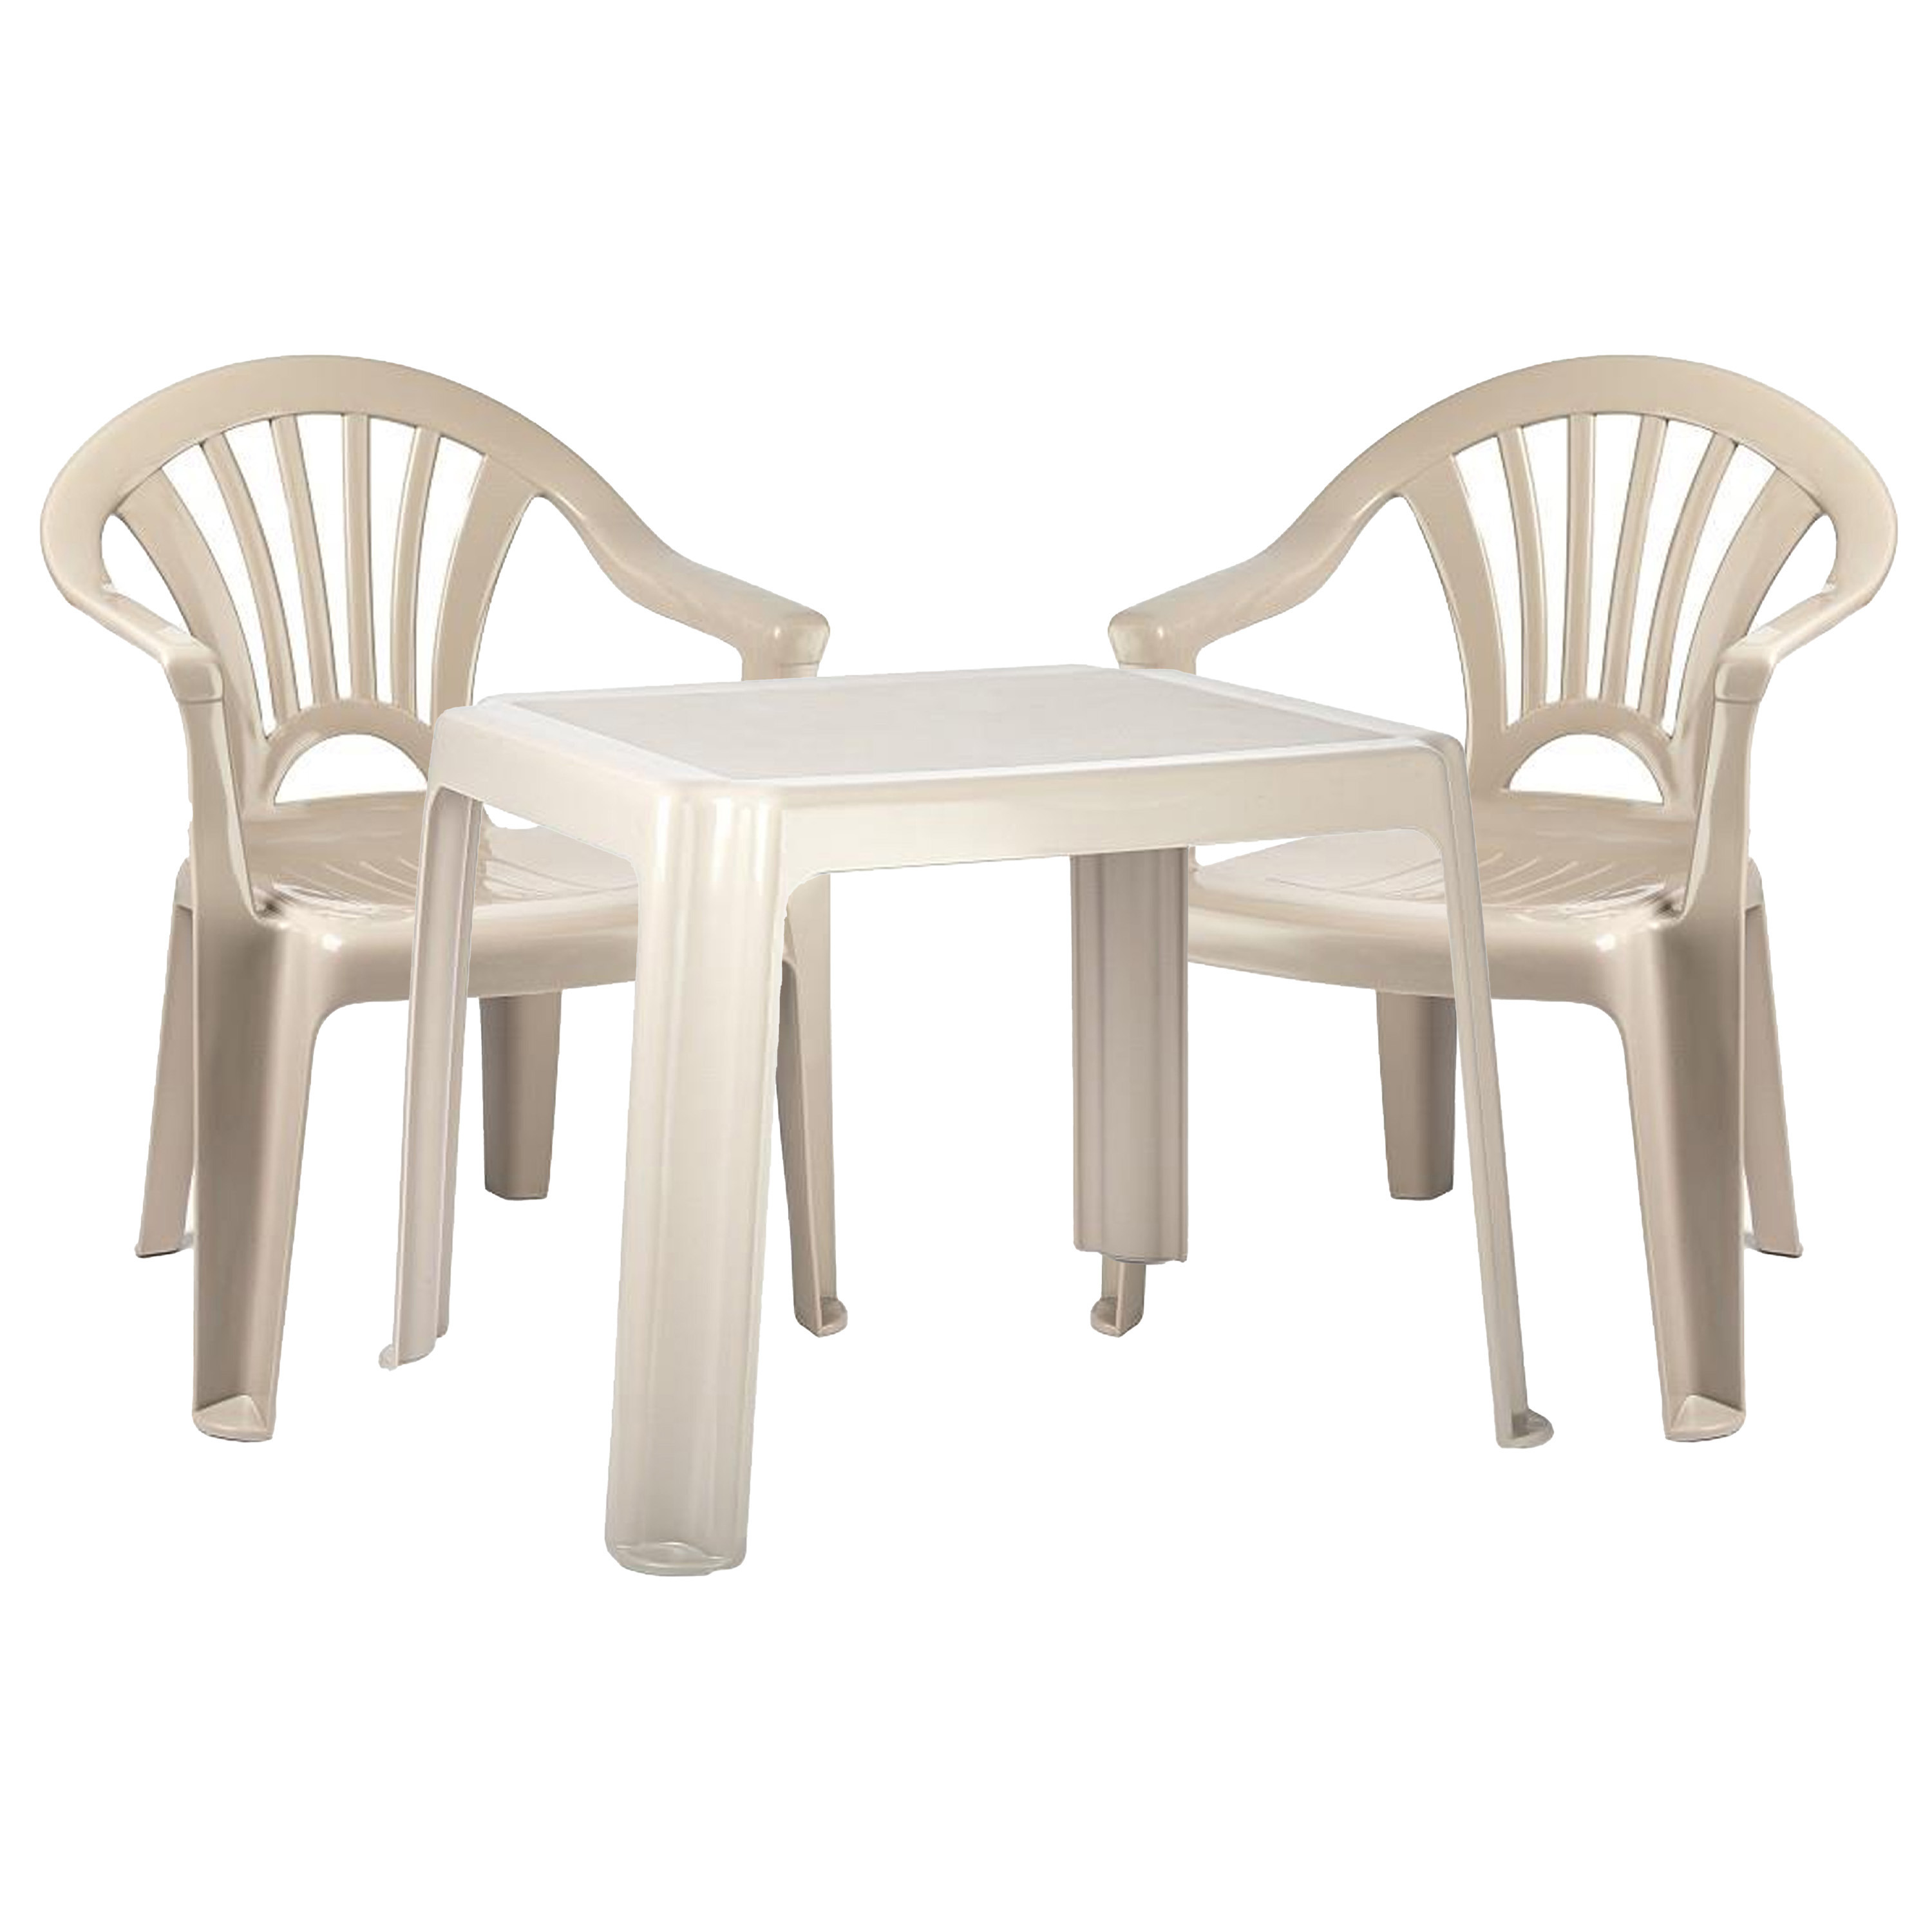 Forte Plastics Kinderstoelen 2x met tafeltje set - buiten/binnen - beige - kunststof -